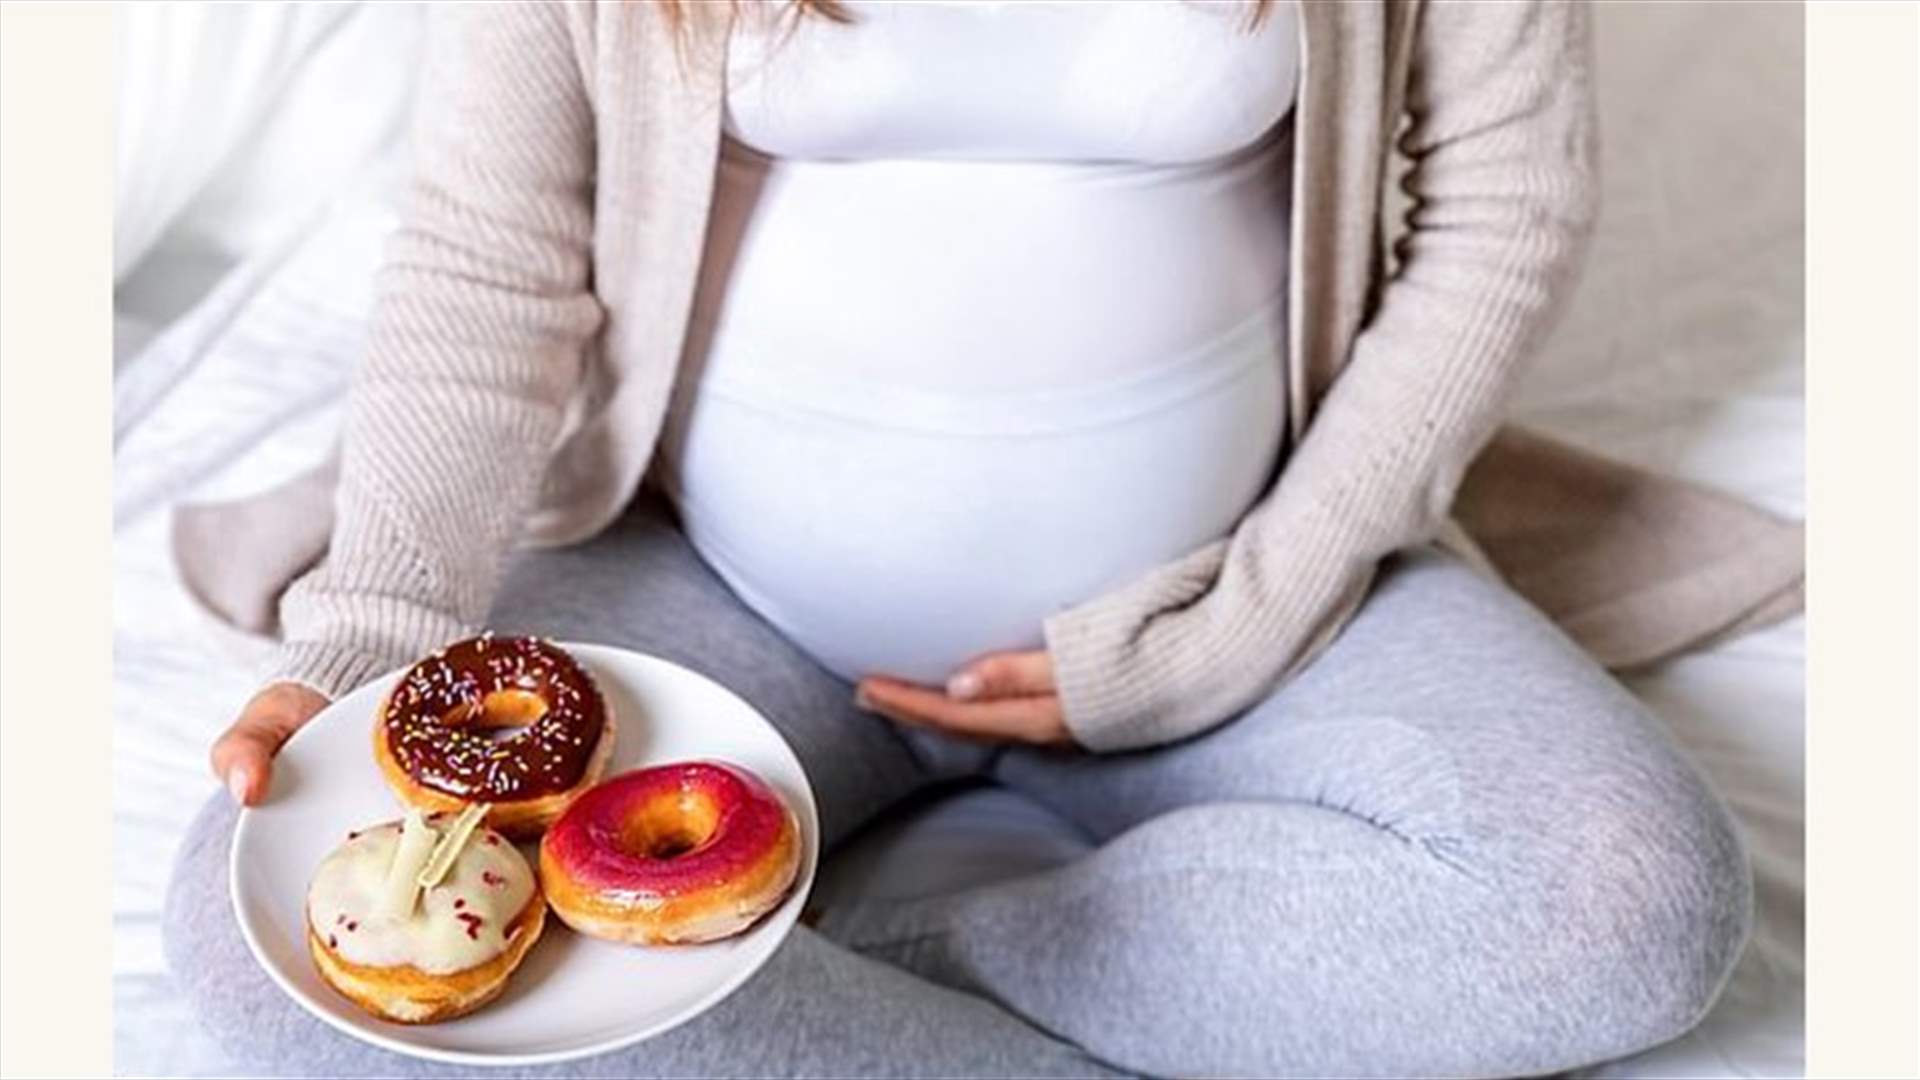 الى النساء الحوامل... لا تتبعن نظاماً غذائياً غنياً بالدهون والسكر لهذا السبب الخطير!